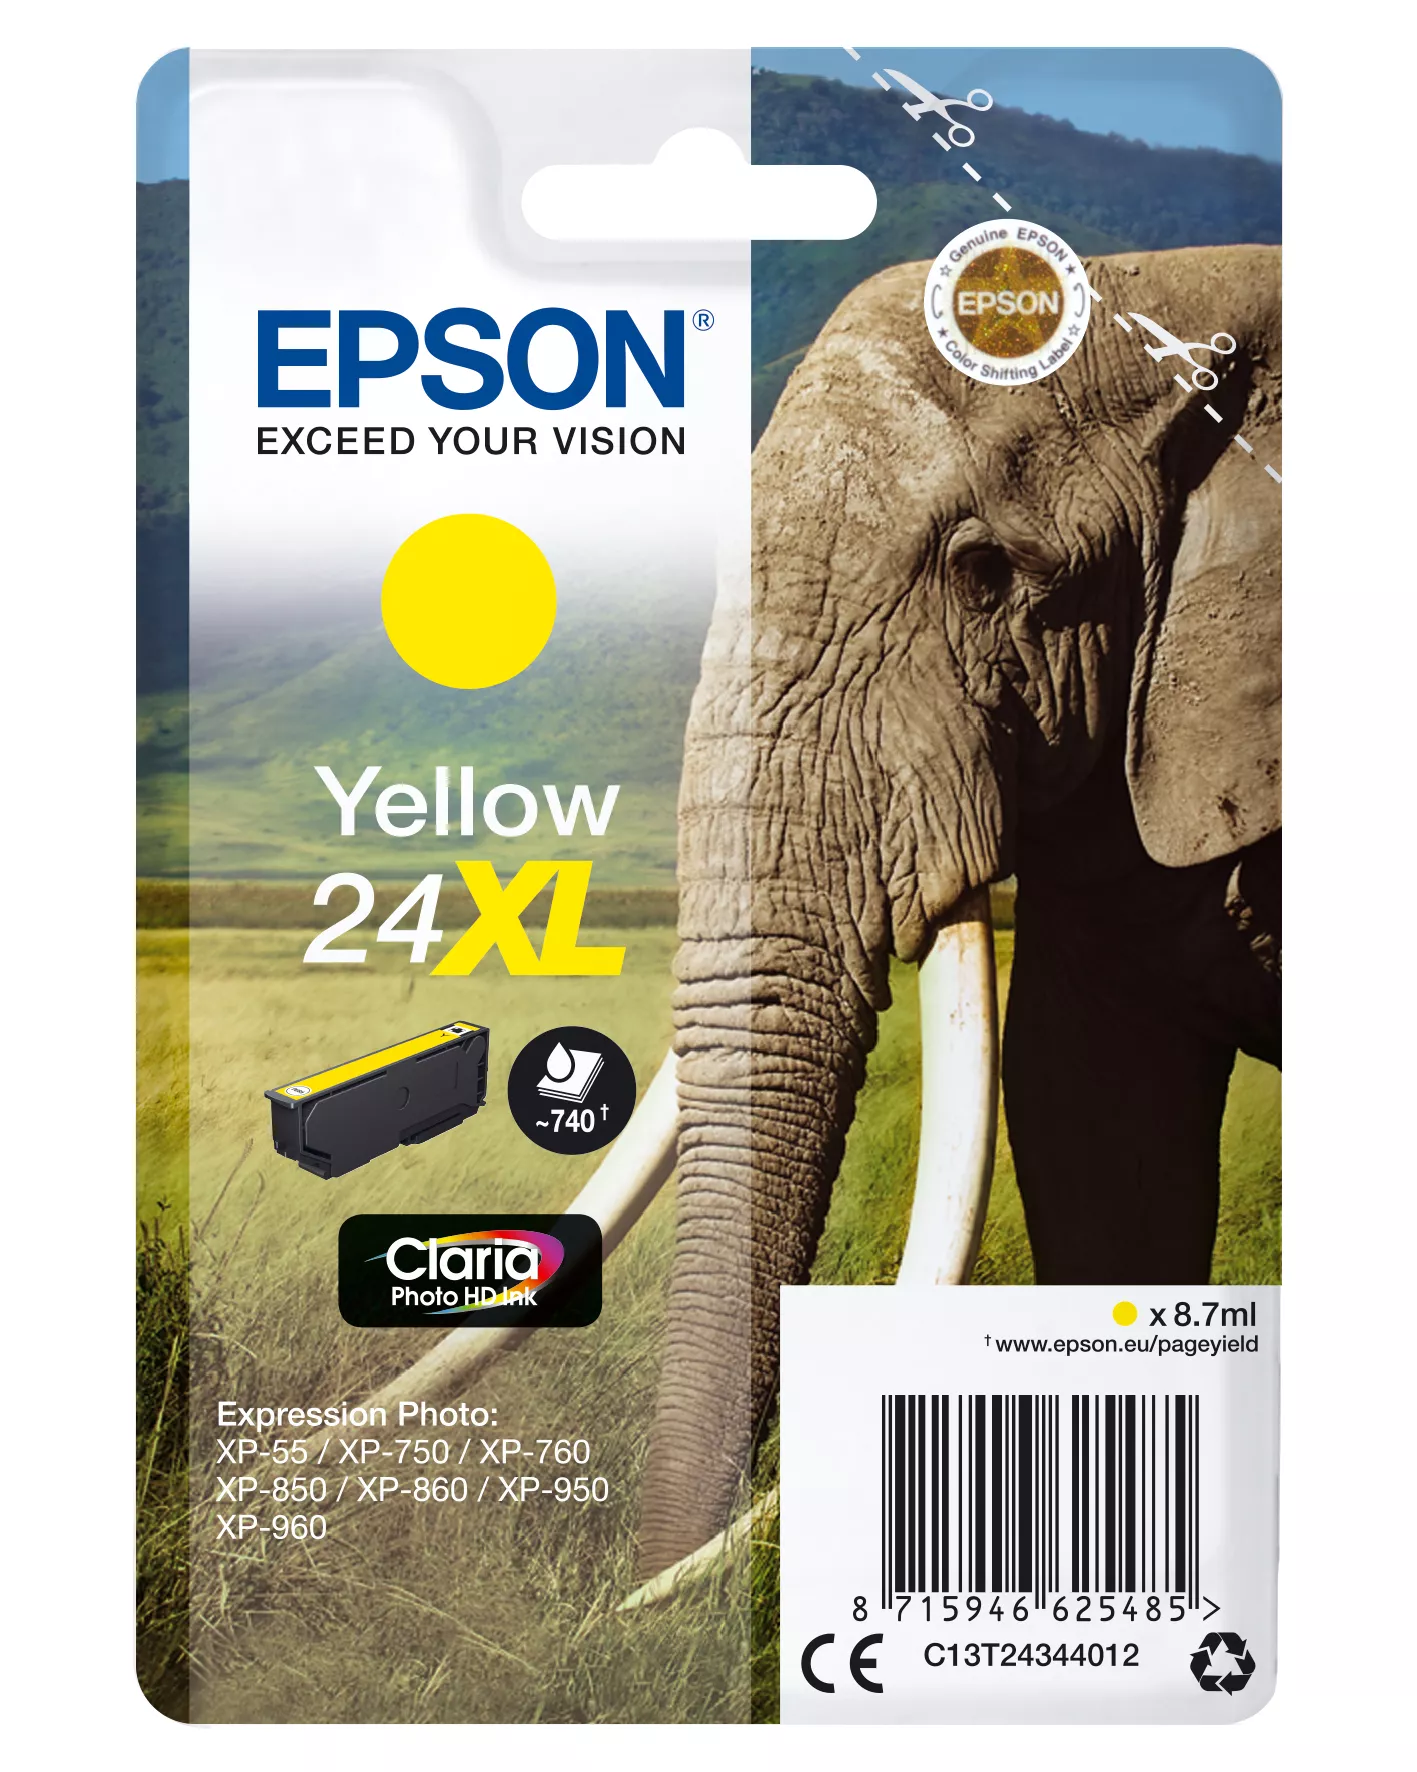 Vente EPSON 24XL cartouche dencre jaune haute capacité 8.7ml au meilleur prix